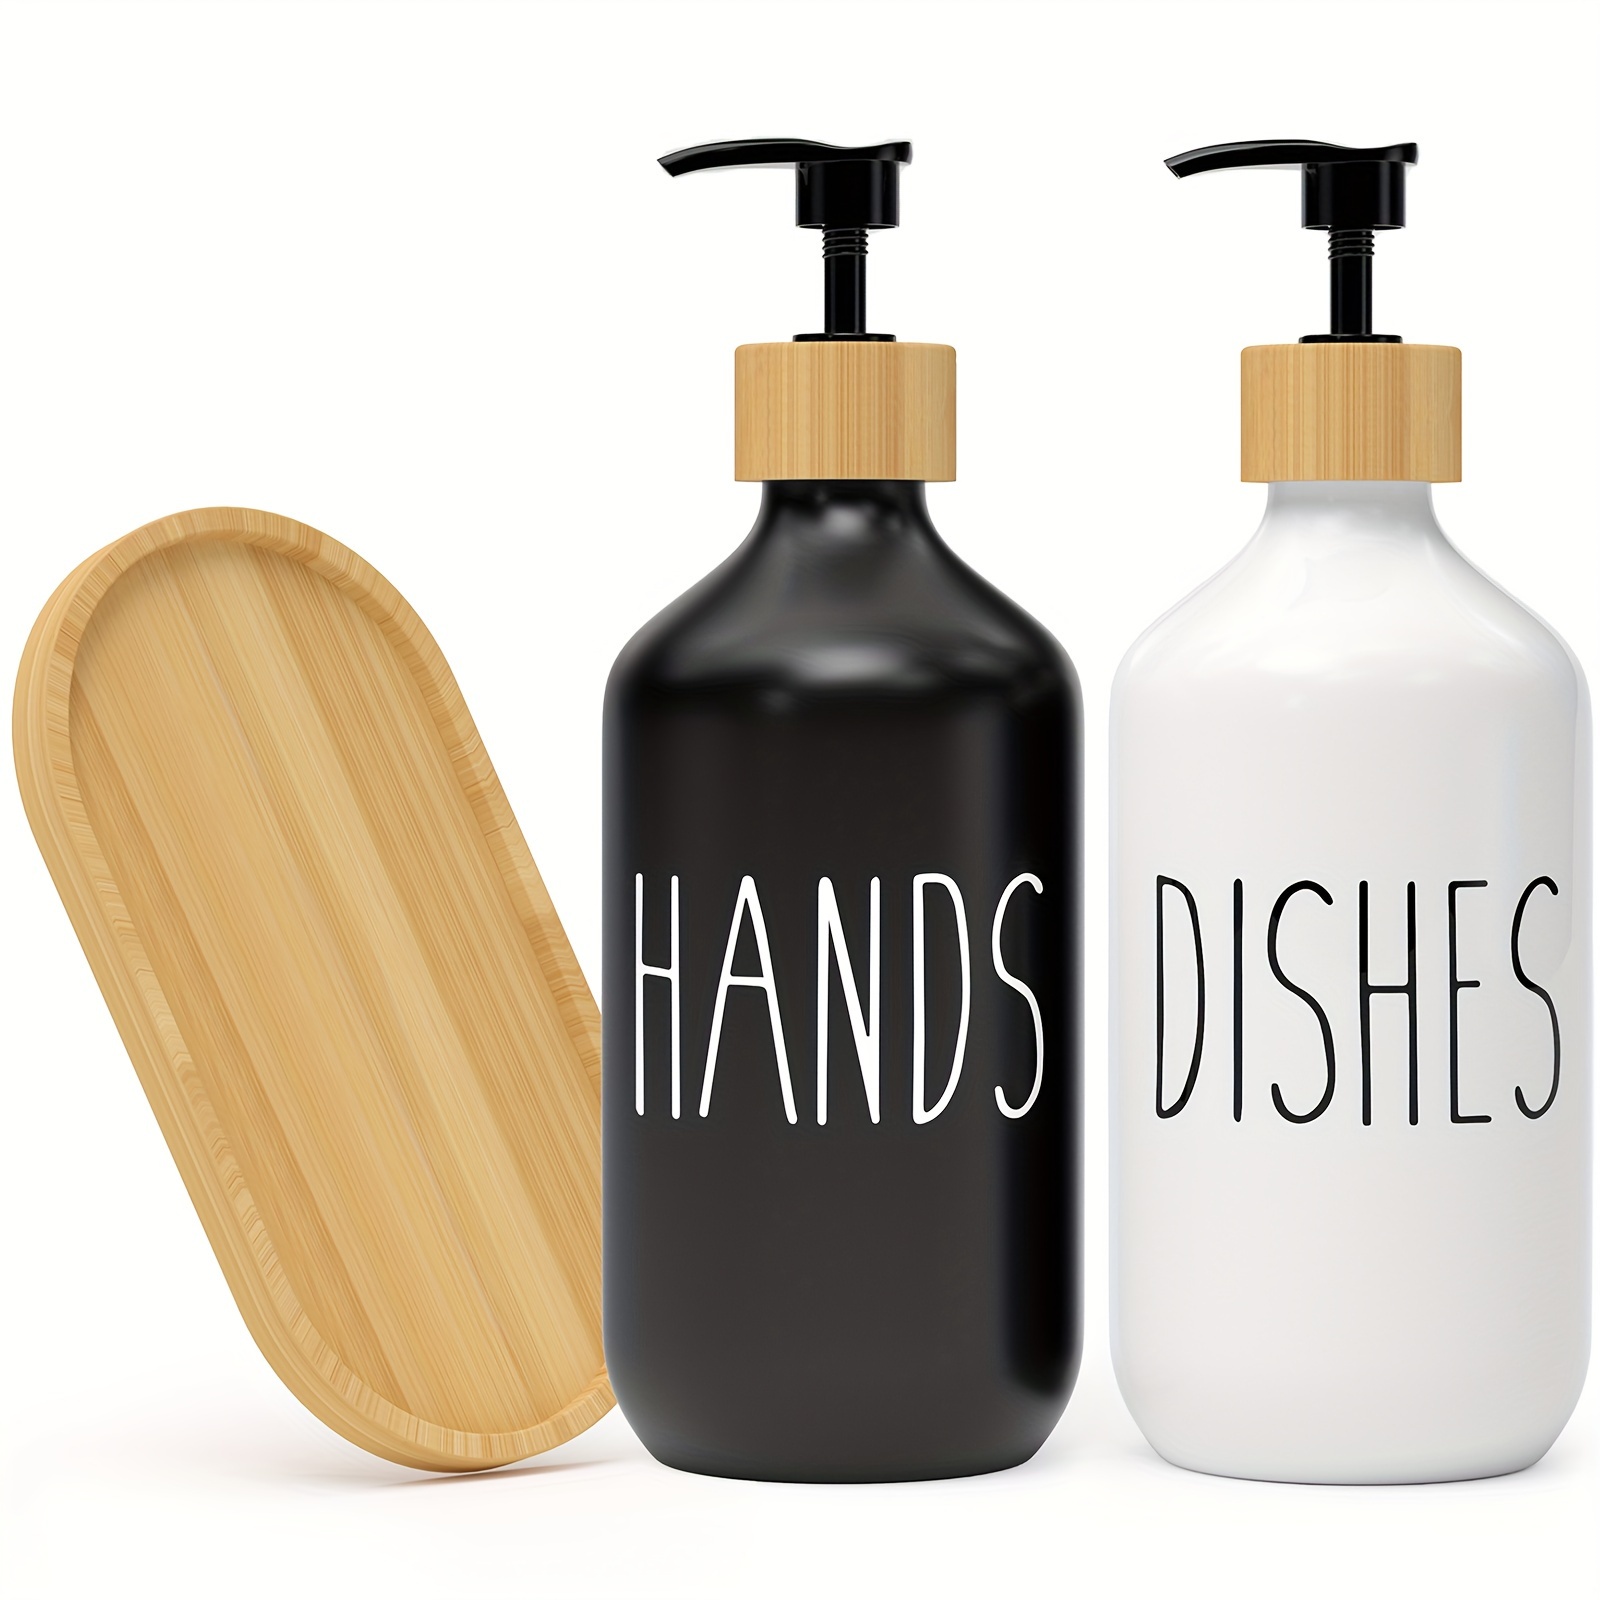 

2pcs Soap Dispenser Set, Countertop Lotion Bottle, Bathroom Hand Soap Dispenser, Refillable Empty Bottle For Hand And Dish Soap, Bathroom Accessories, Home Decor